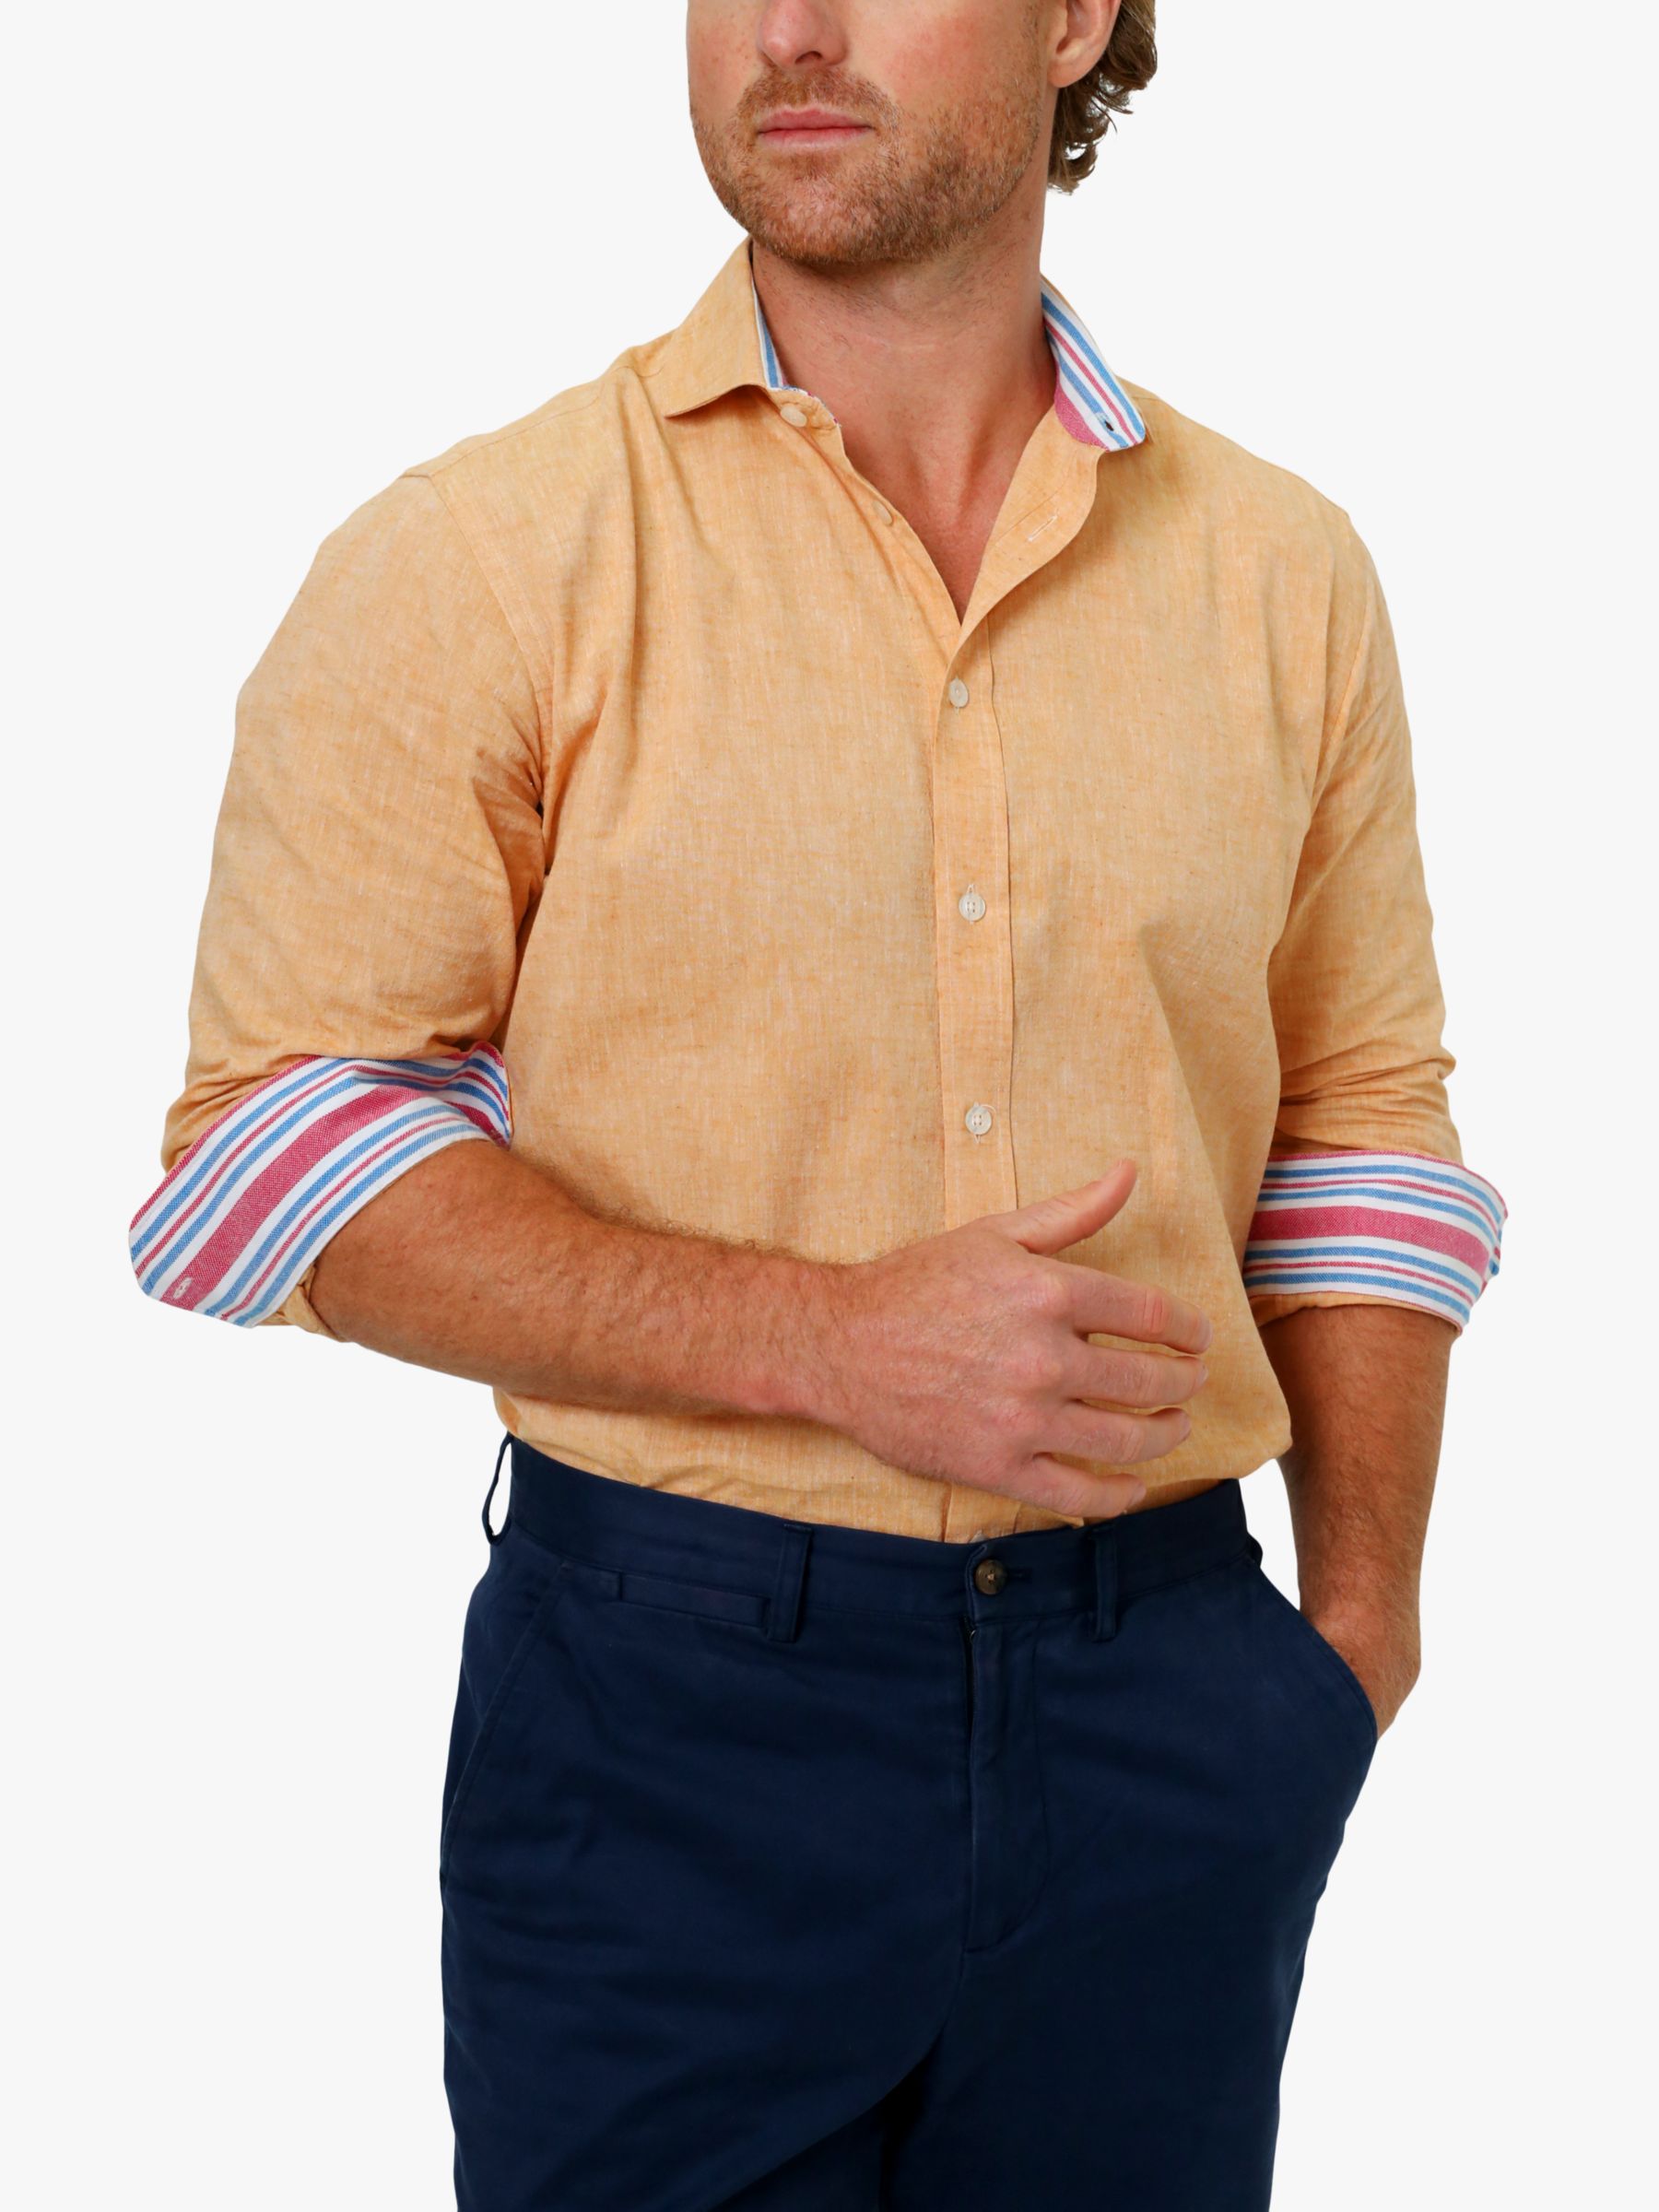 KOY Linen Blend Shirt, Tangerine, S